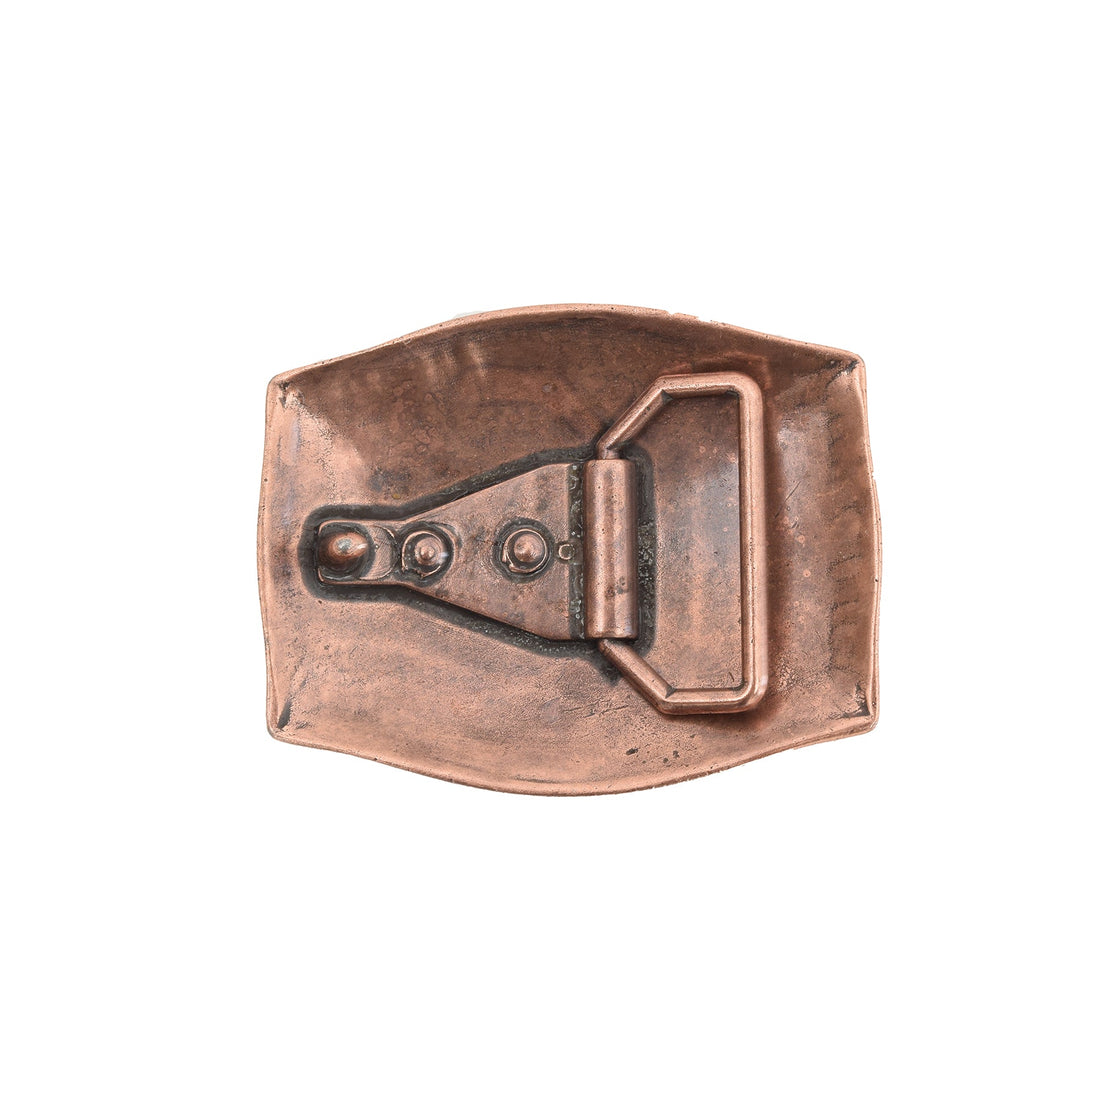 Averroes Bronze Toned Removable Metal Belt Buckle - Buckles Zengoda Shop online from Artisan Brands